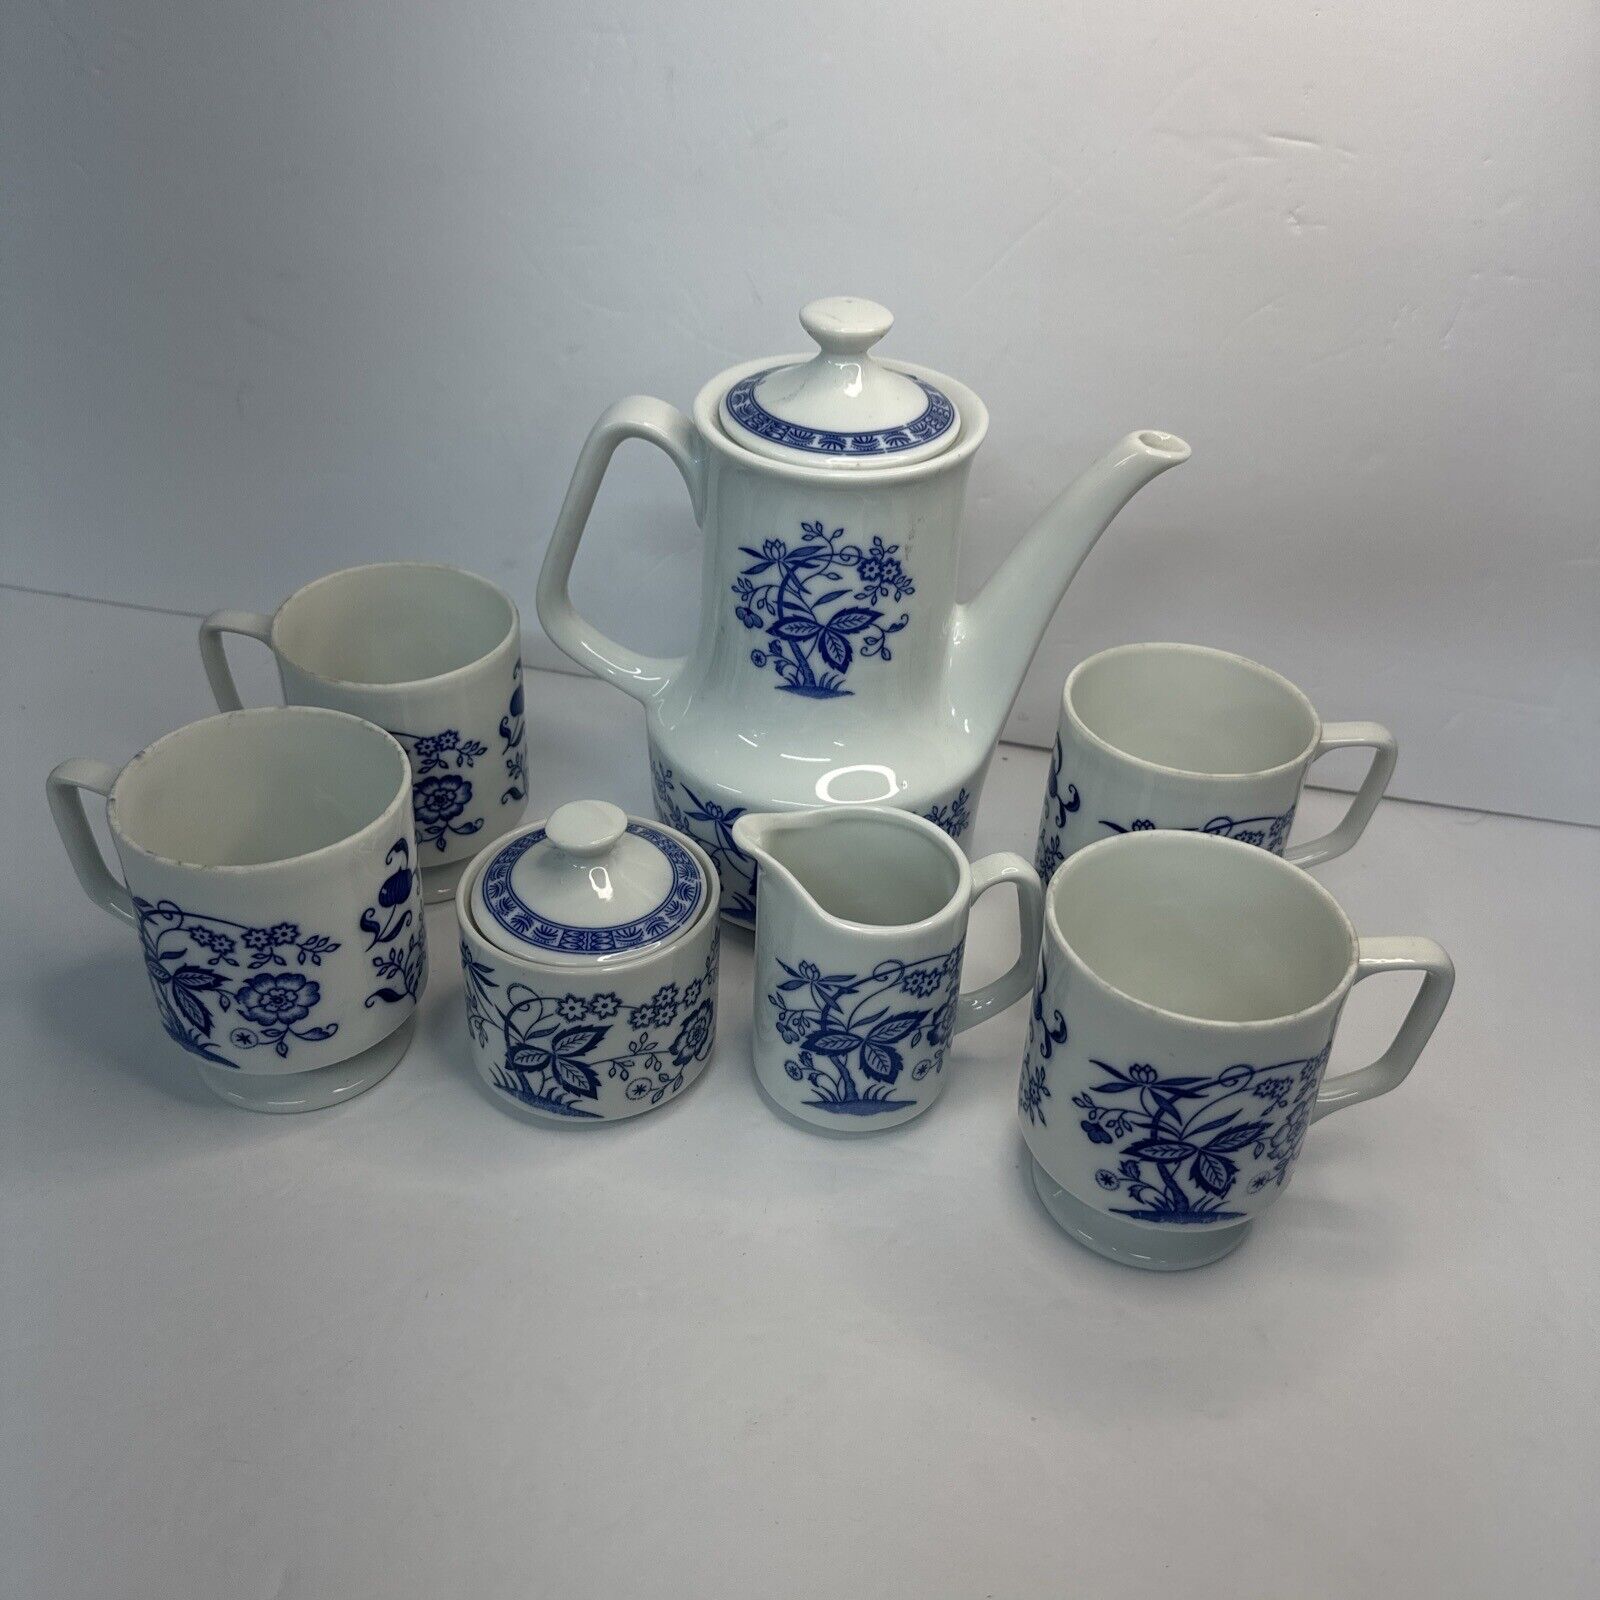 Vintage Japan Porcelain White & Blue Floral Pattern 7 Piece Coffee Set 1960s VGC